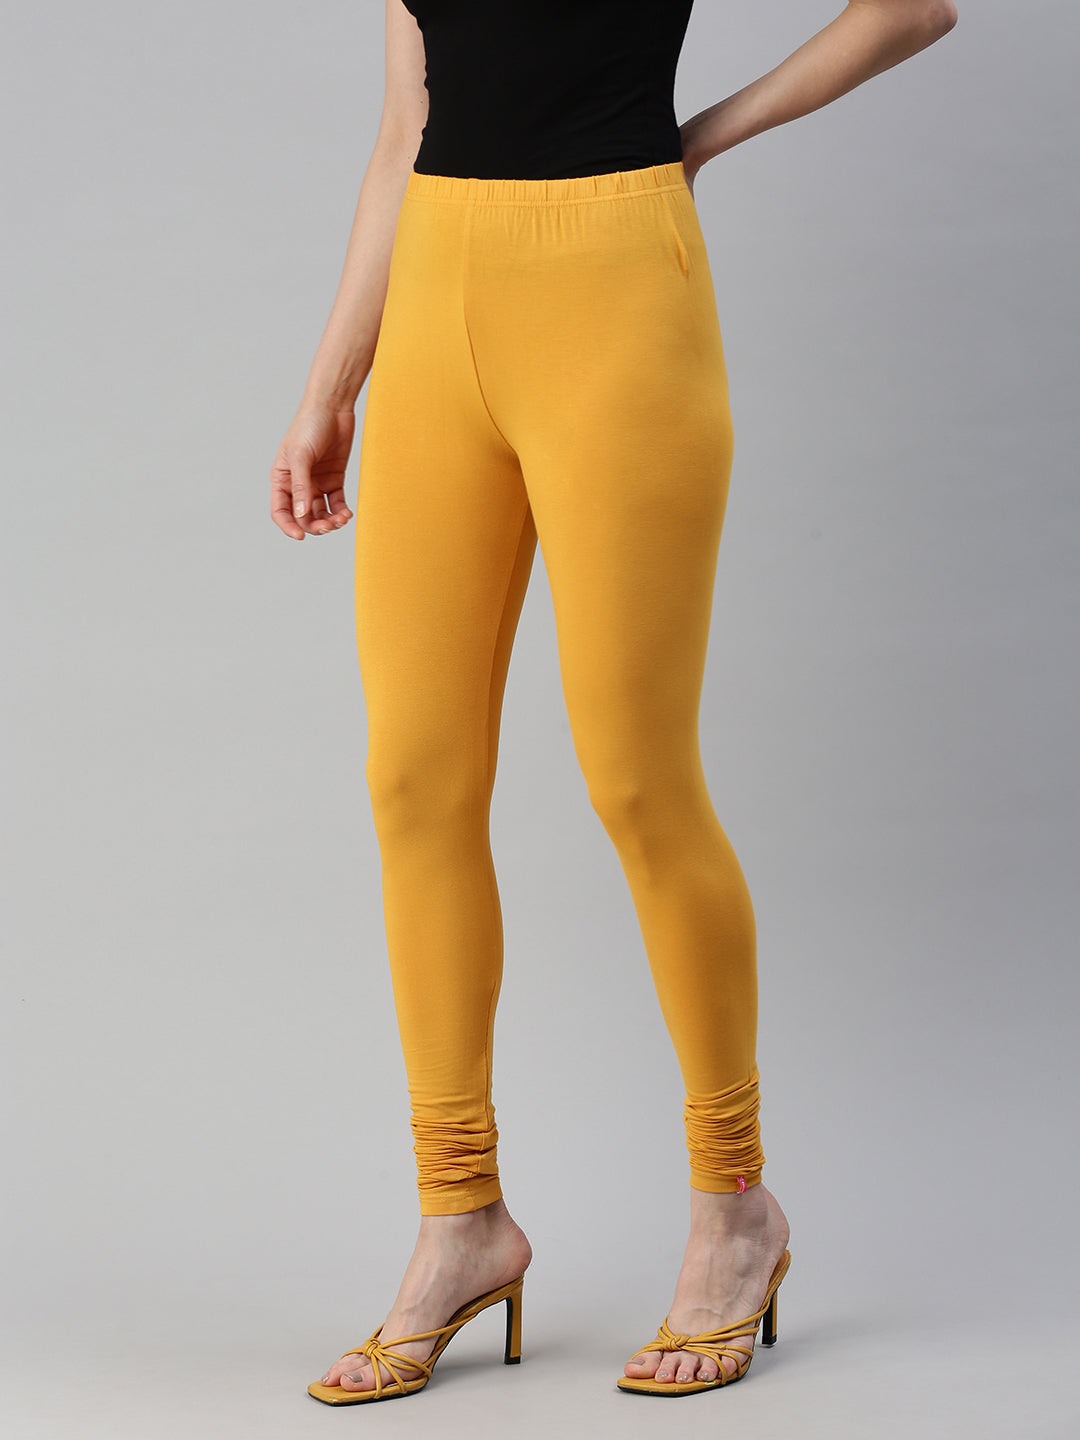 Demoza brand shimmer leggings - Women - 1762201267